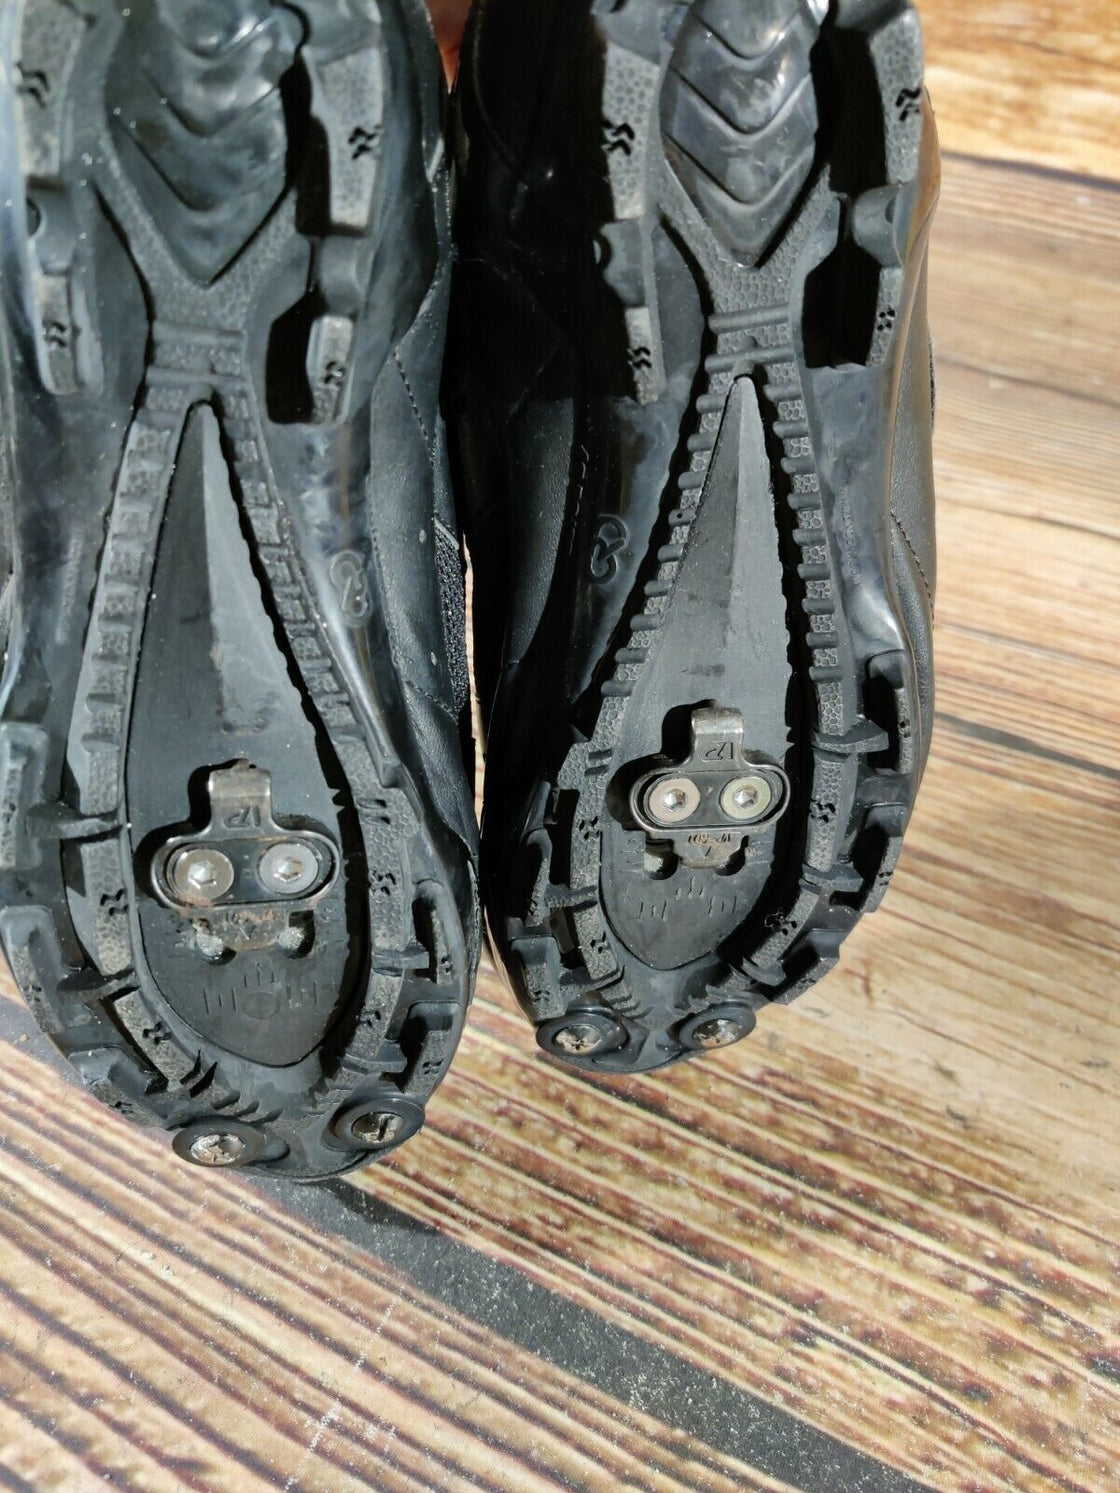 DIADORA Cycling MTB Shoes Mountain Biking Boots 2 Bolts Size EU40, US7